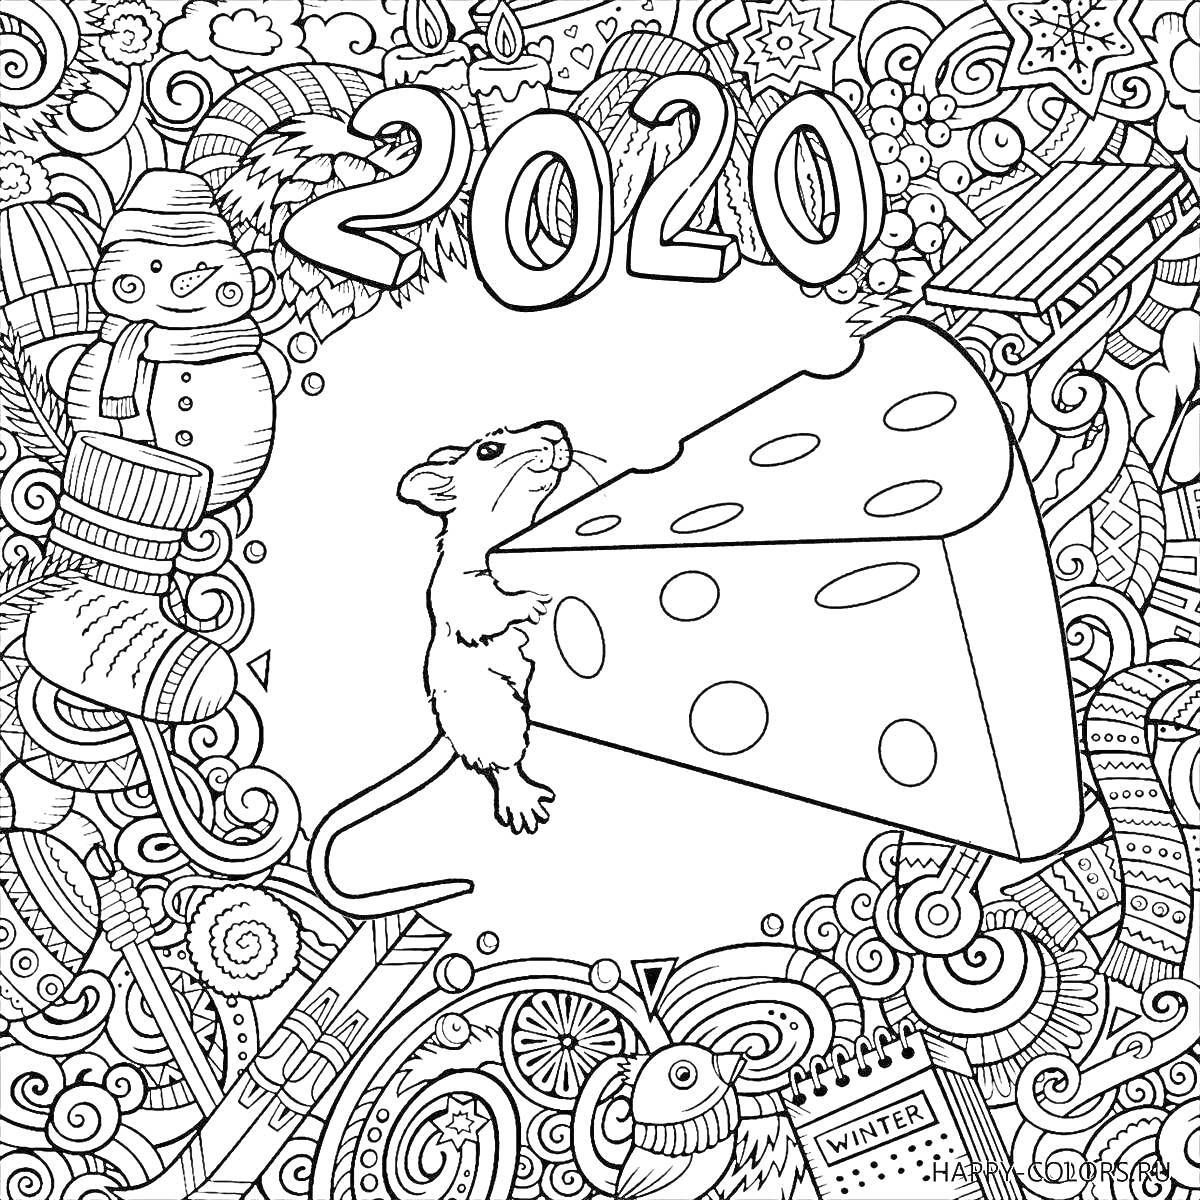 Год 2020, мышь с кусочком сыра, новогодние украшения